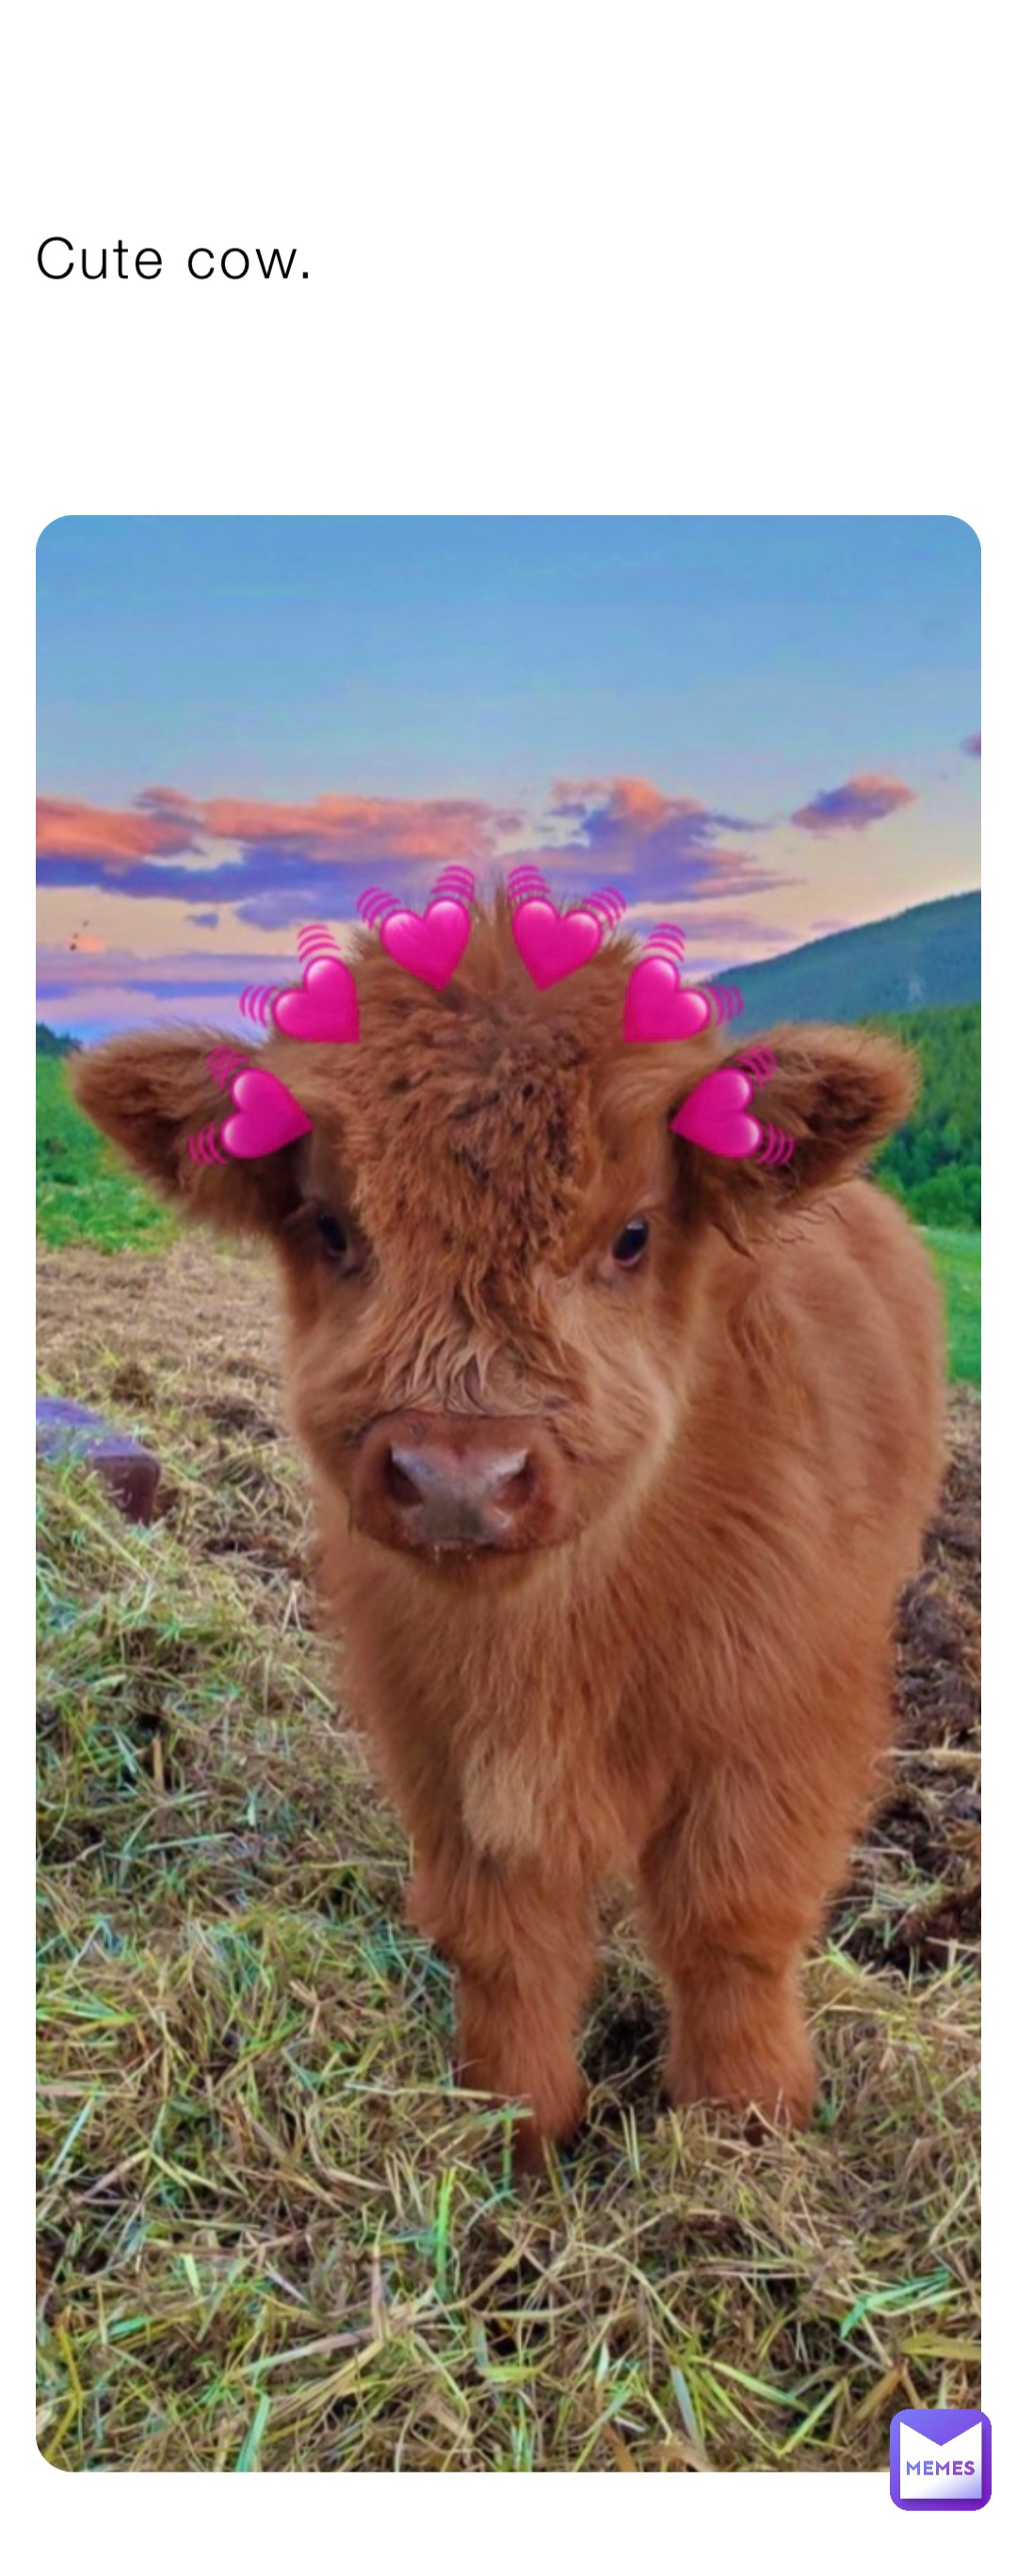 Cute cow.